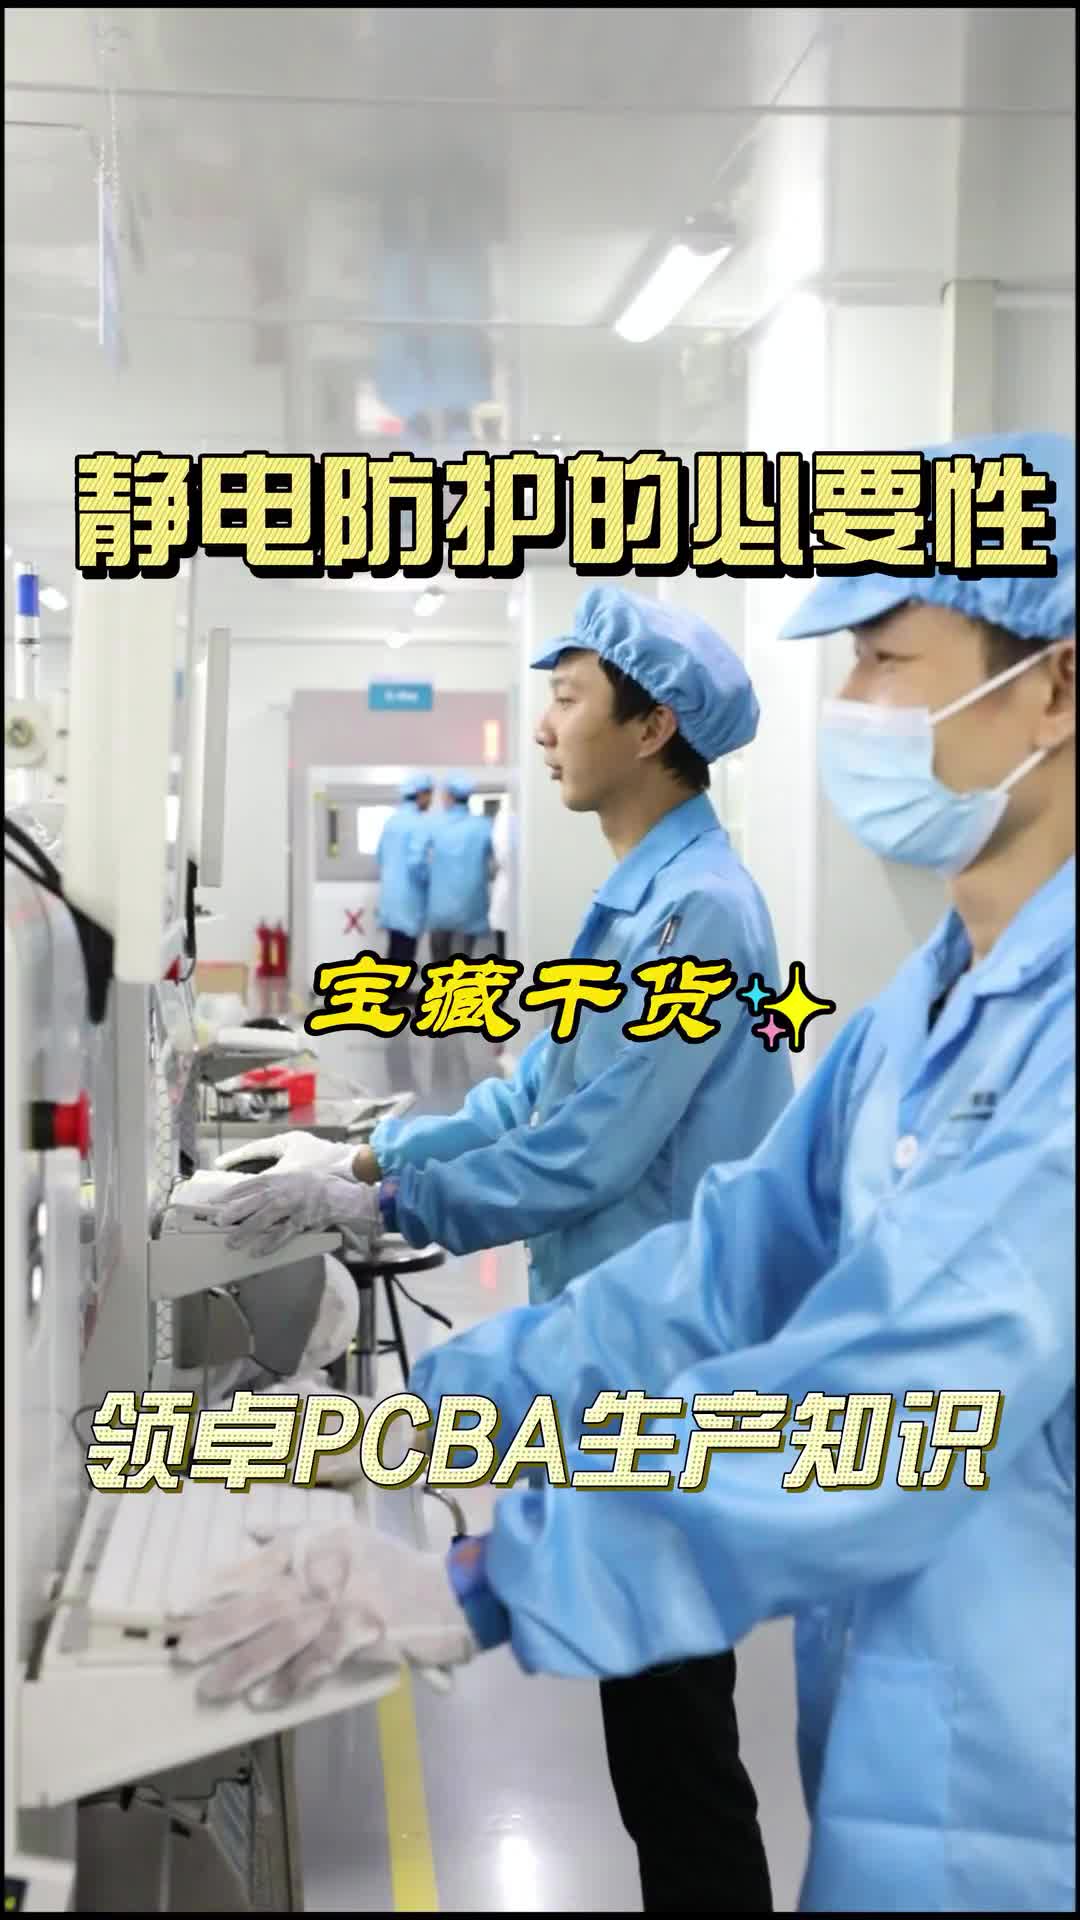 #硬声创作季  PCB小知识：在PCBA生产中，需要做好静电防护，才能有效的保护电子元器件